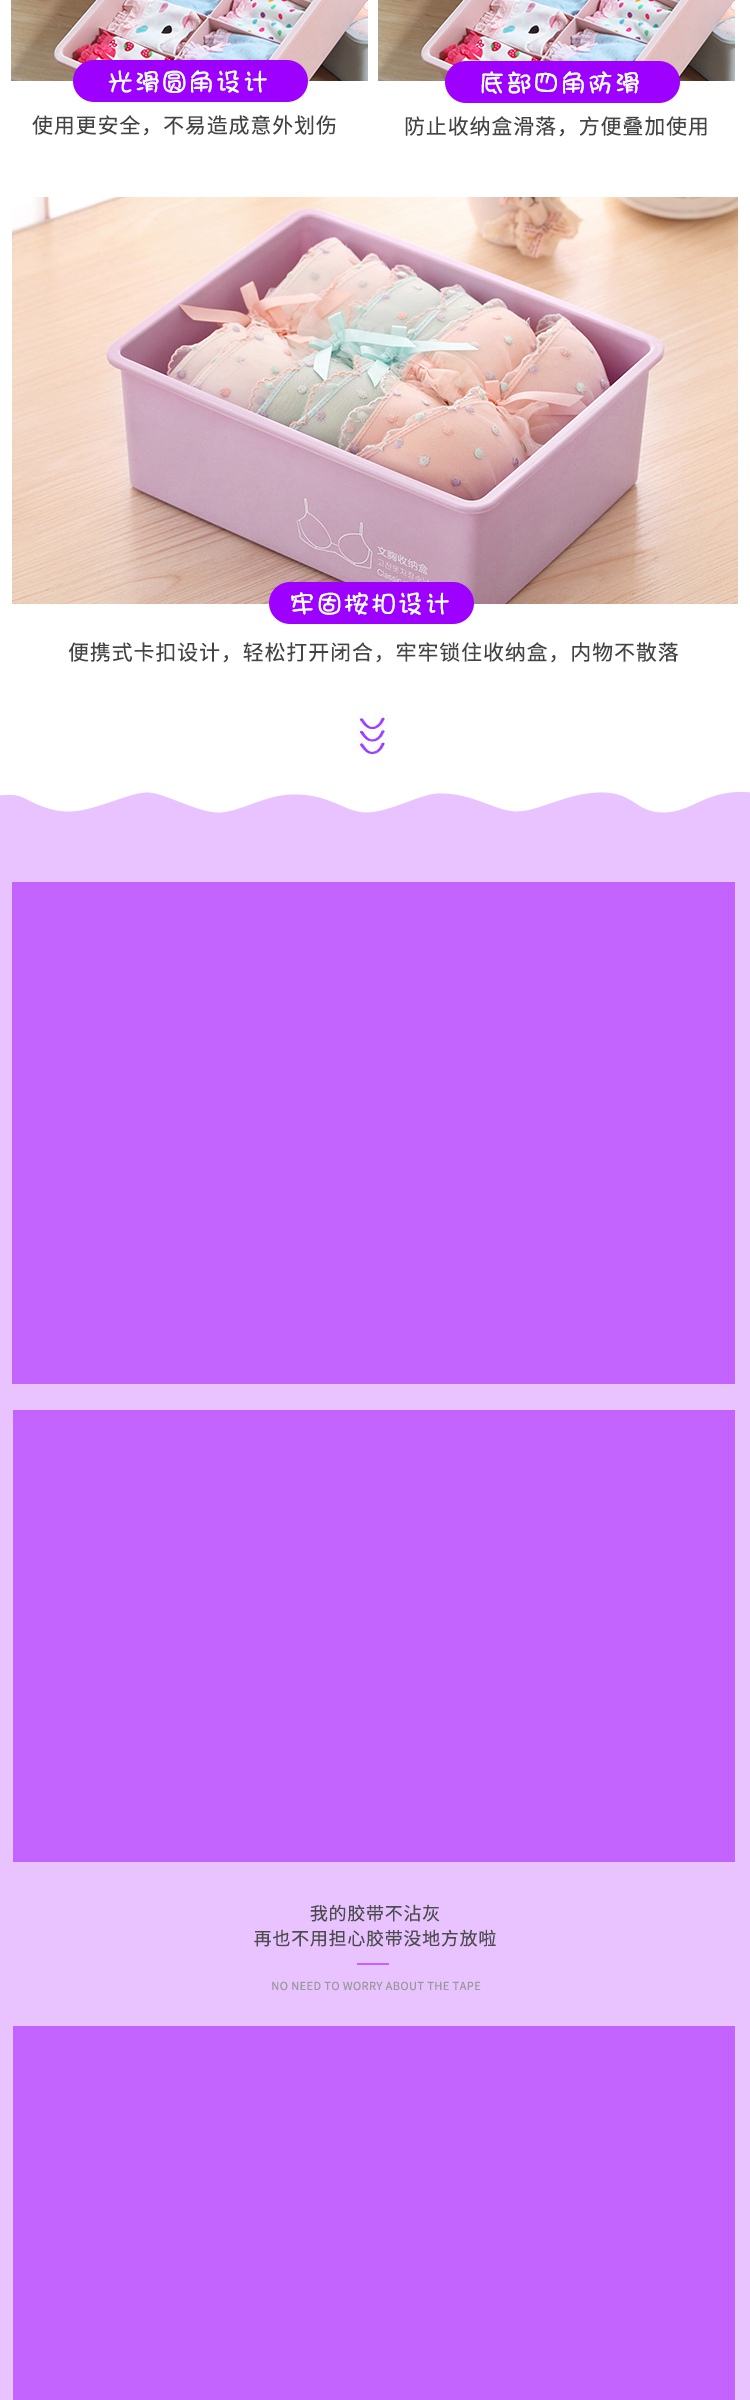 淘宝天猫紫色浪漫内衣收纳盒详情页模板